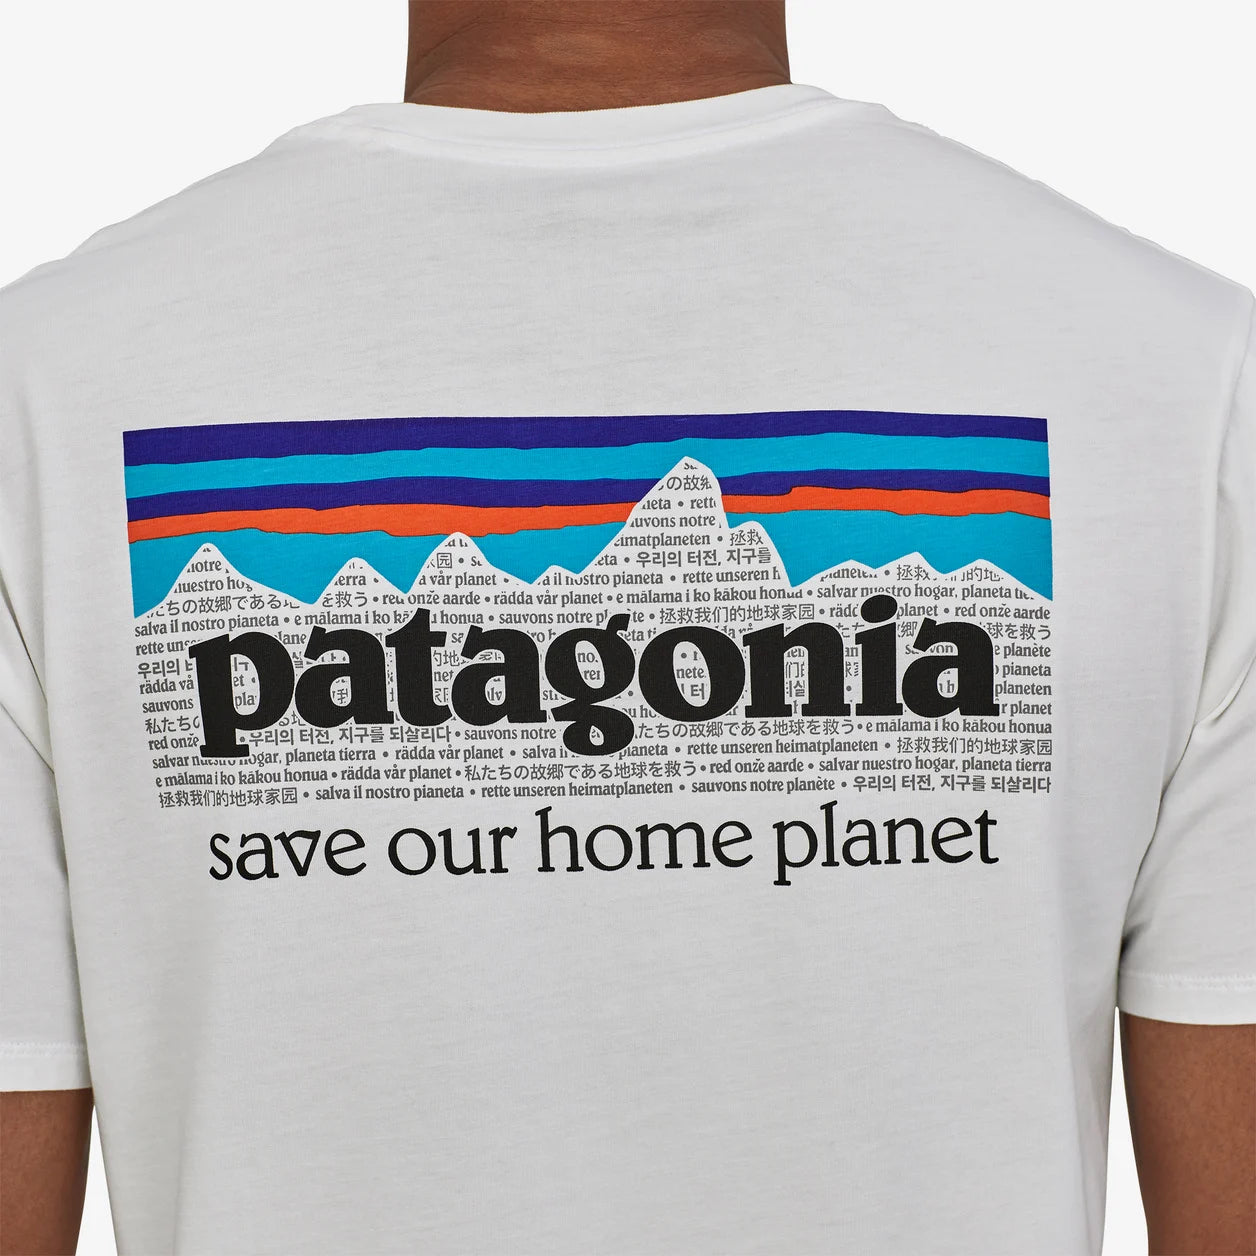 PATAGONIA Men's P-6 Mission Organic T-Shirt White